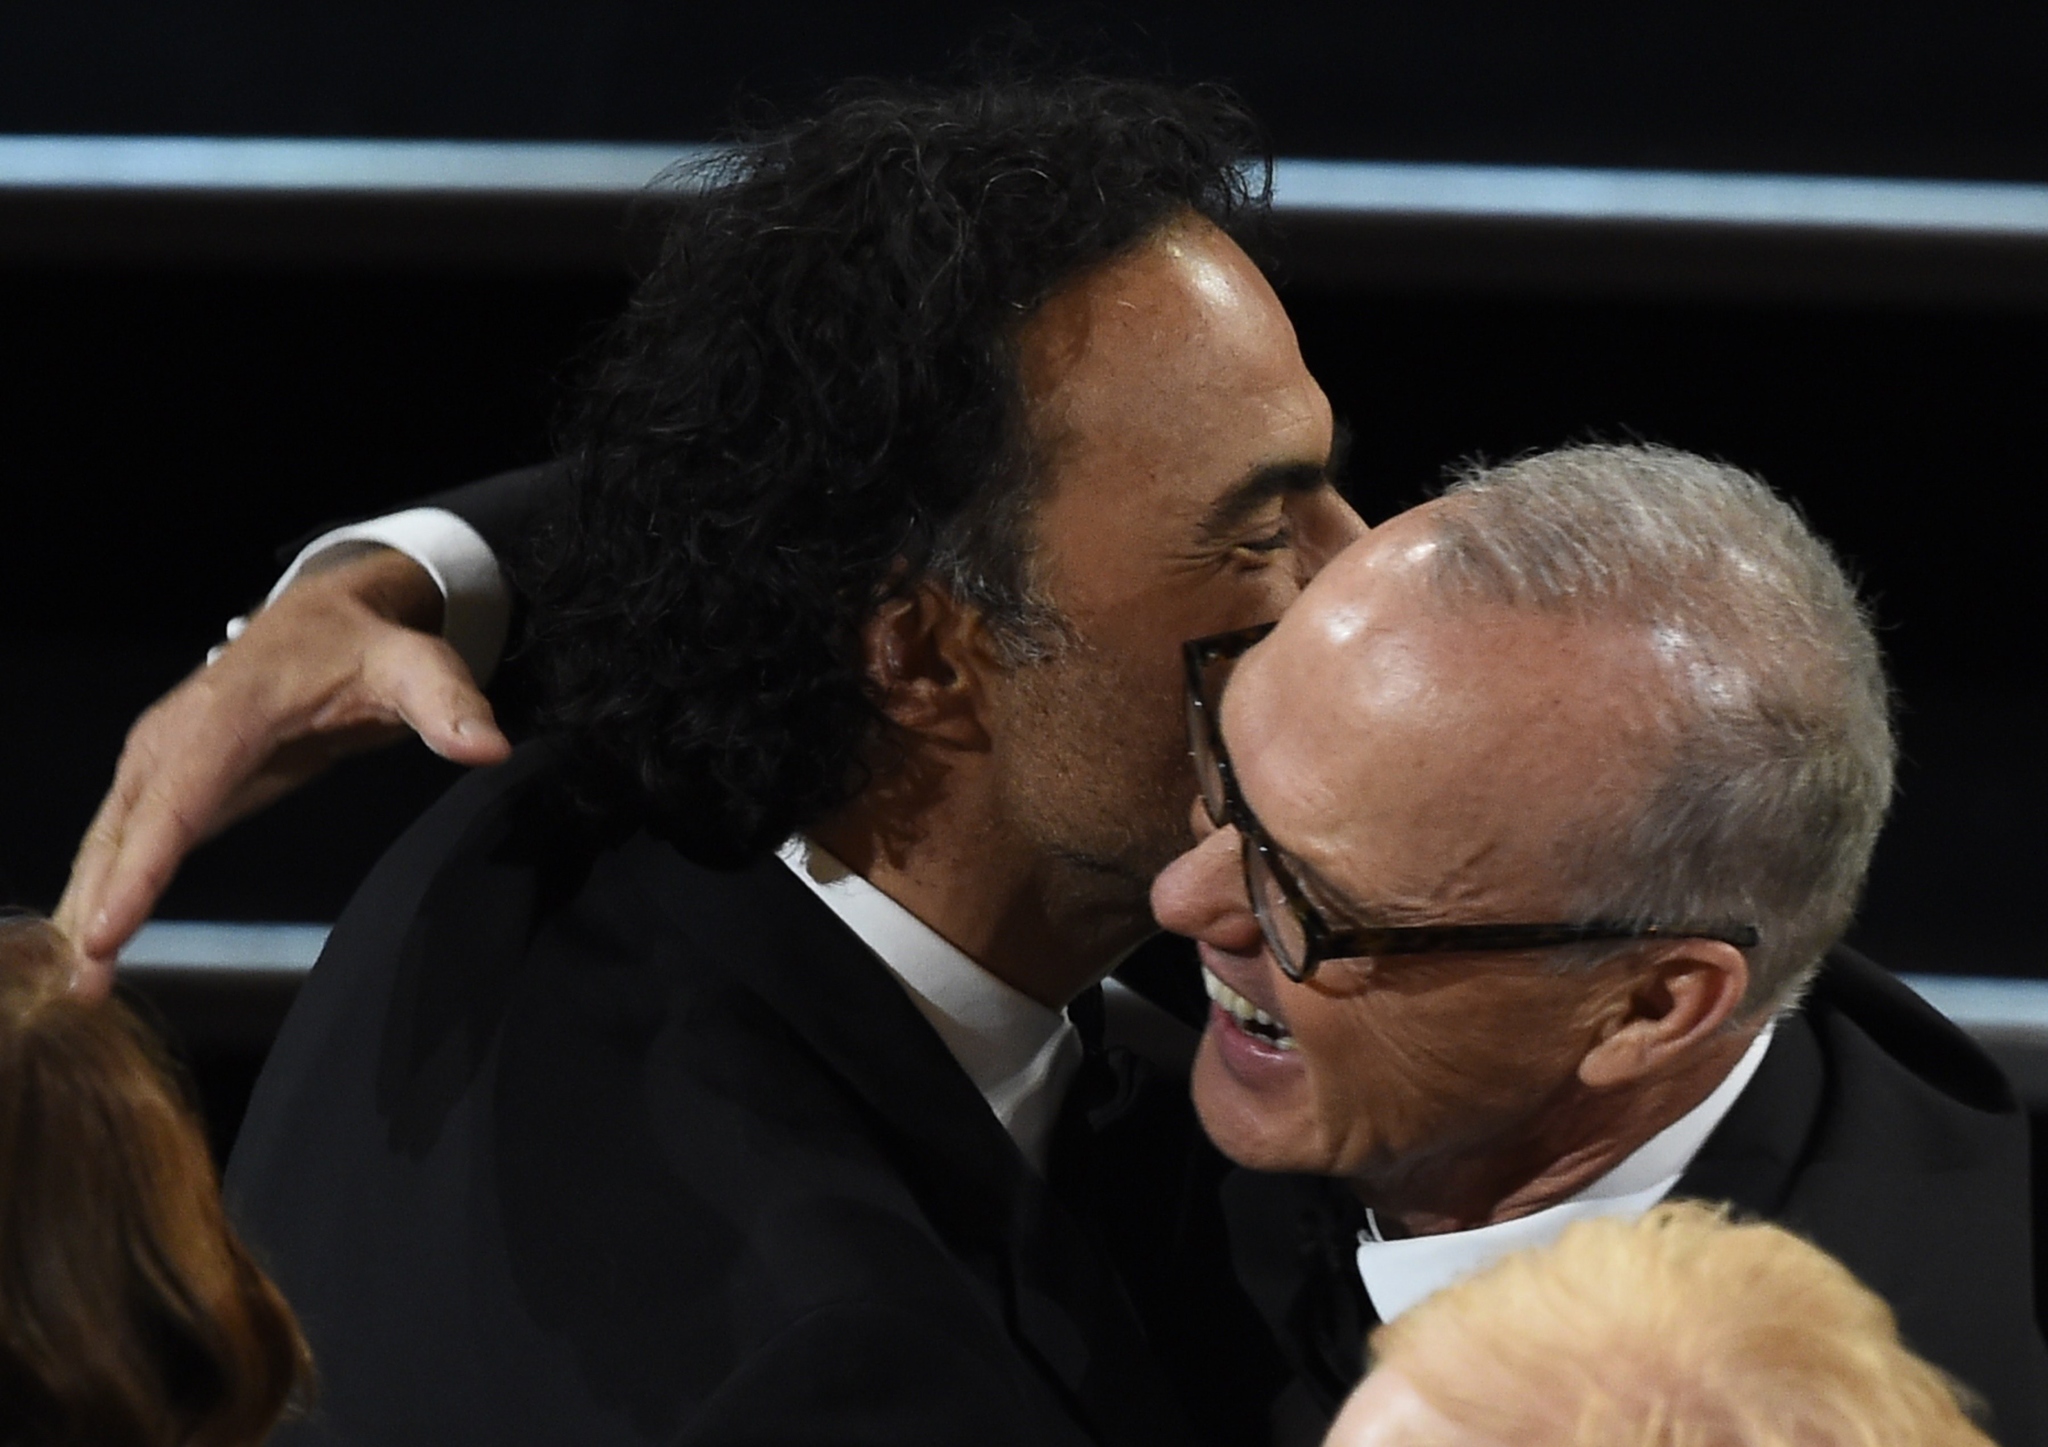 Michael Keaton and Alejandro González Iñárritu at event of The Oscars (2015)